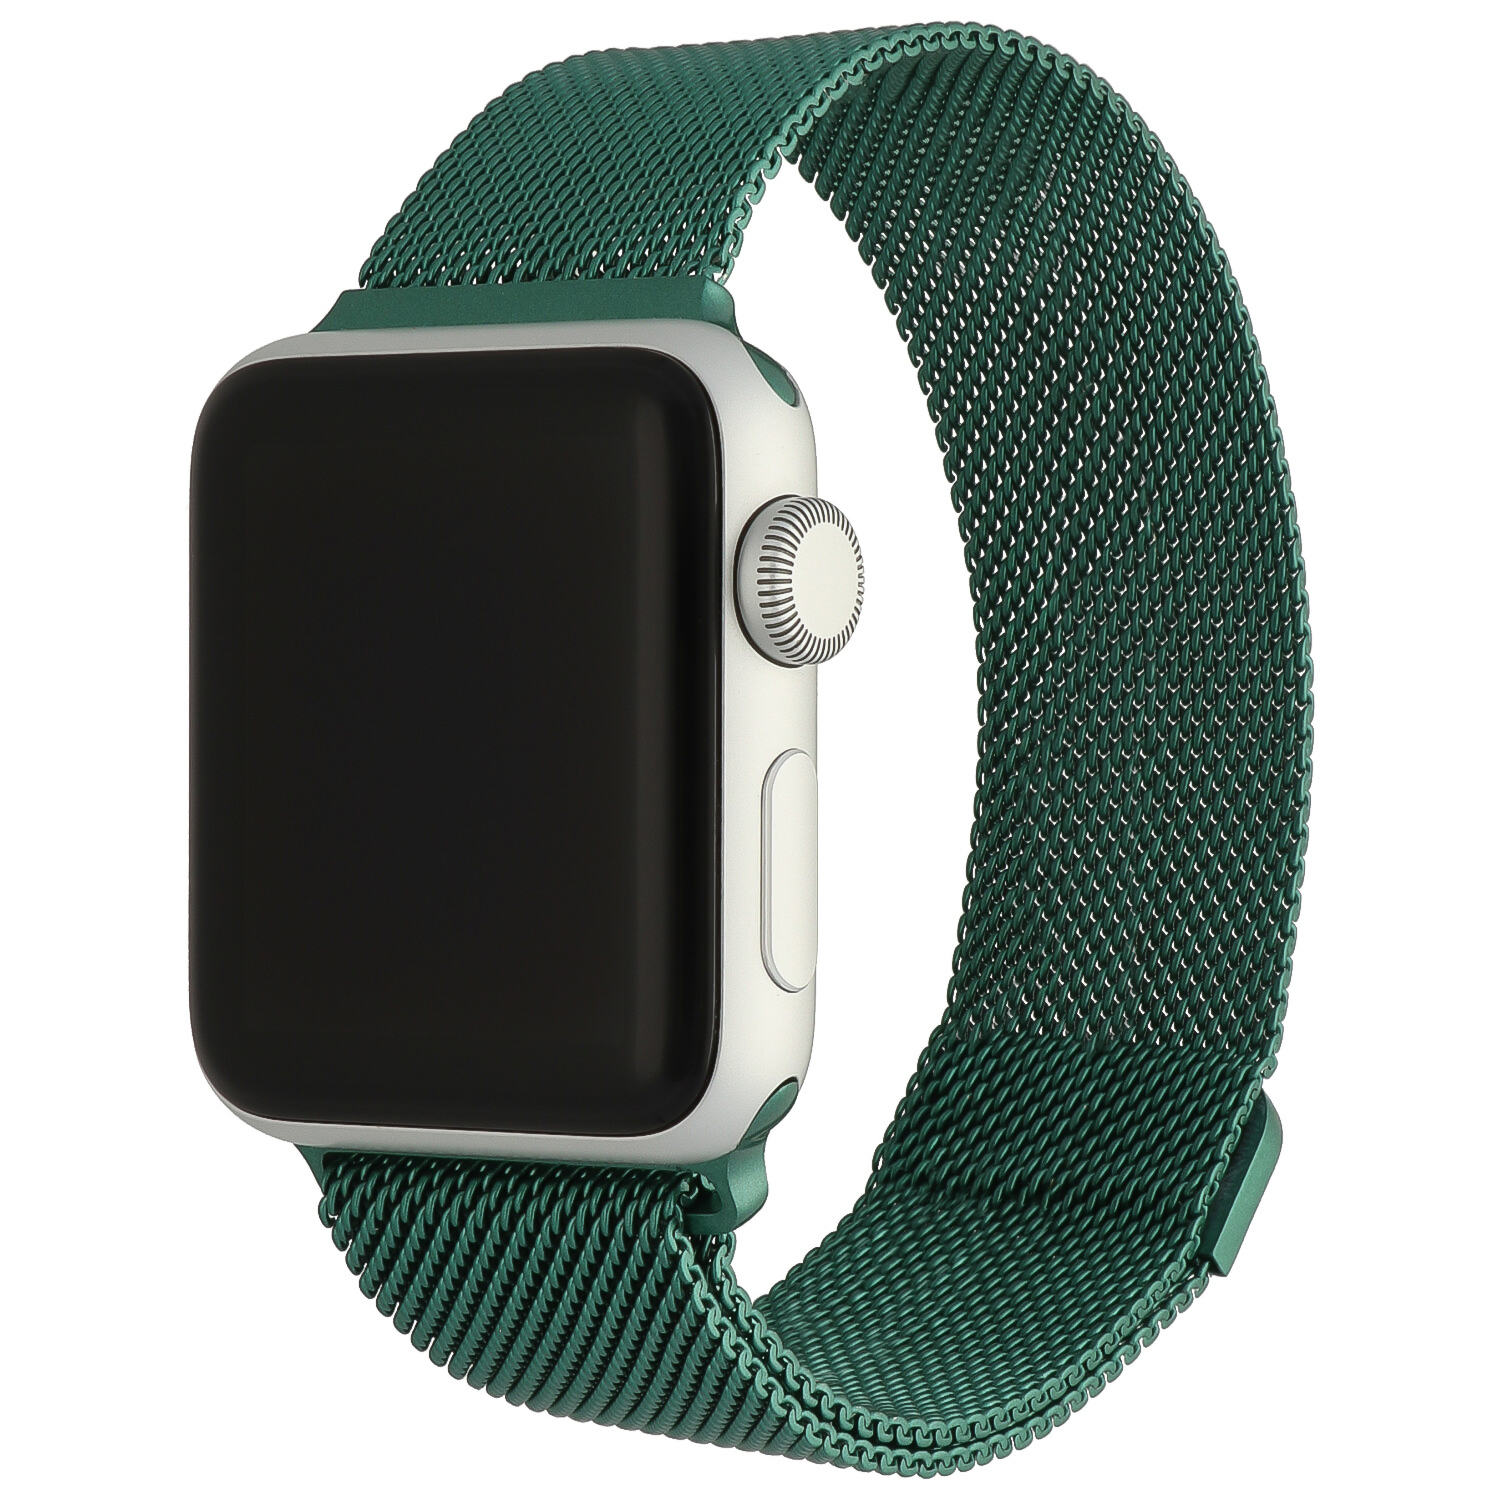 Correa Milanese loop para el Apple Watch - verde oscuro